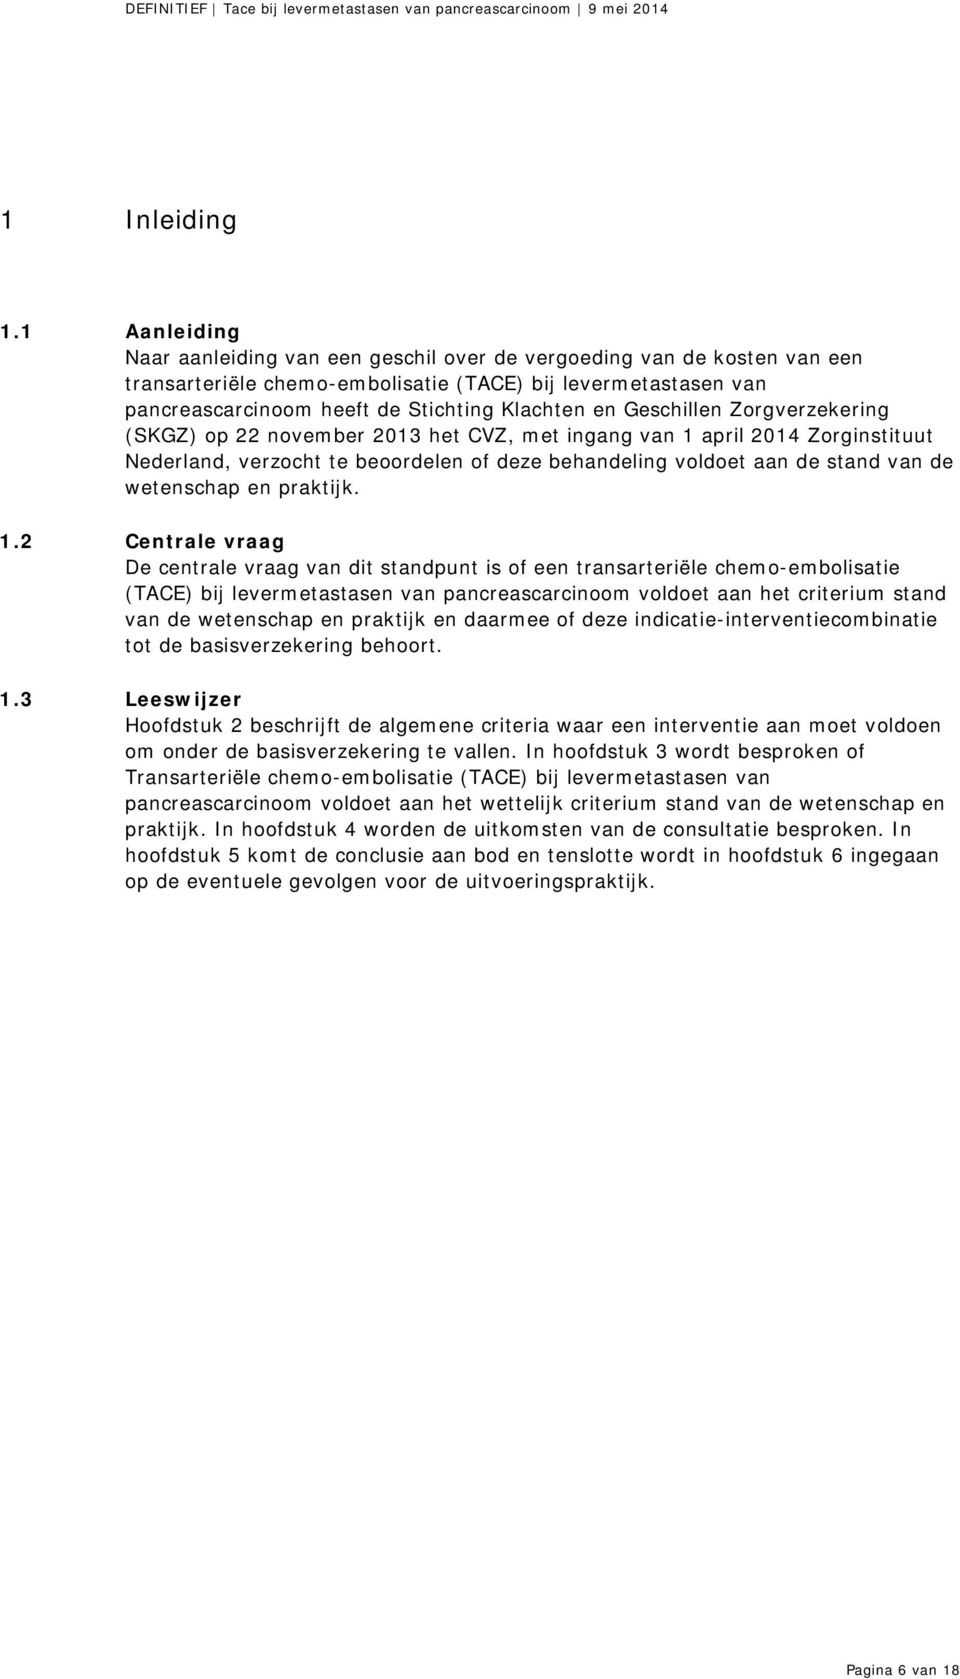 Geschillen Zorgverzekering (SKGZ) op 22 november 2013 het CVZ, met ingang van 1 april 2014 Zorginstituut Nederland, verzocht te beoordelen of deze behandeling voldoet aan de stand van de wetenschap